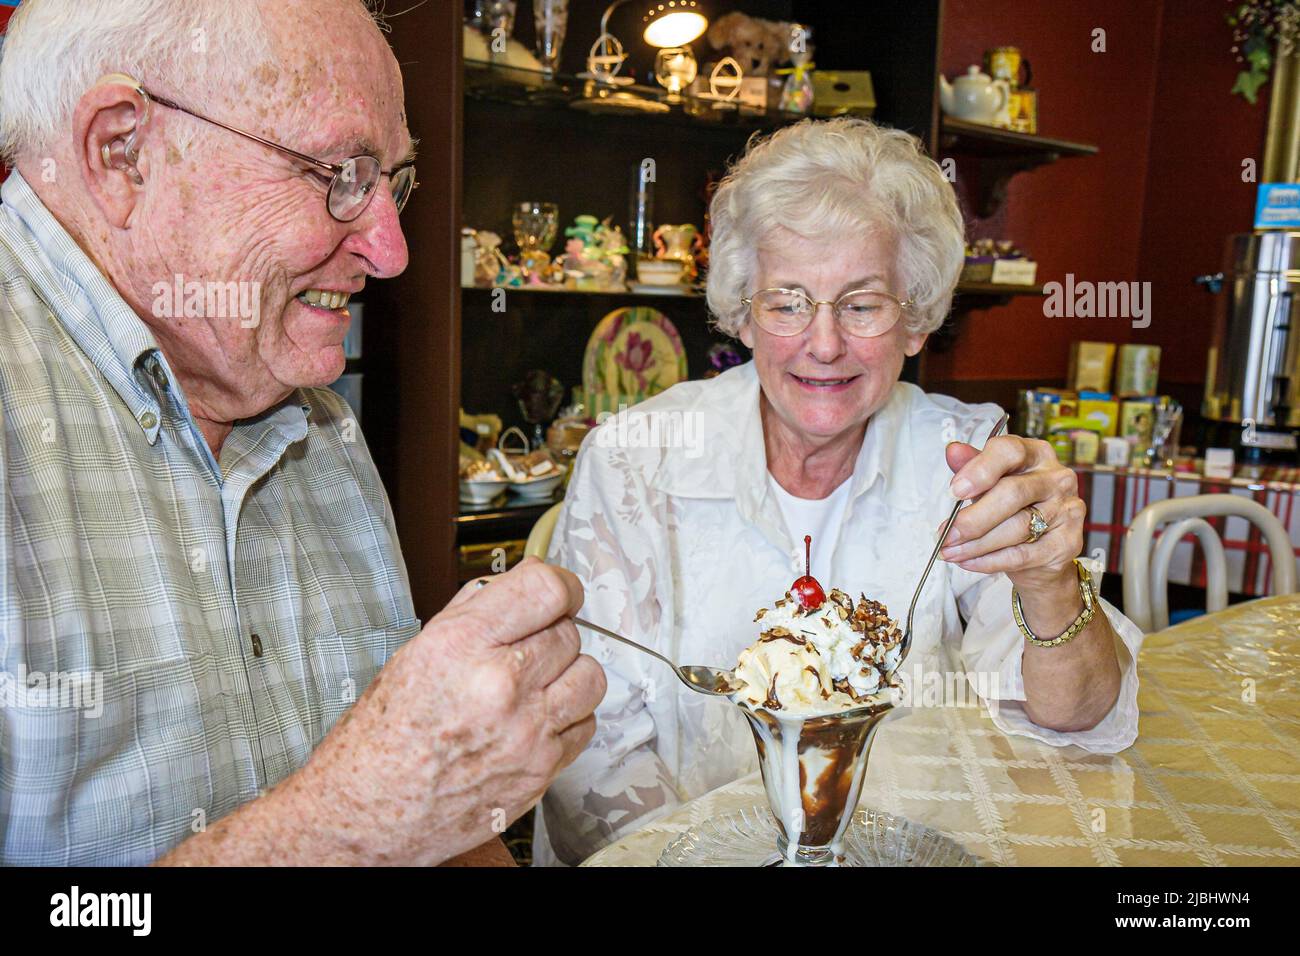 Indiana Kosciusko County, Pierceton, 1st Street, Weckmuller fine Chocolates, anziani cittadini pensionati coppia gelato sundae dessert coppia Foto Stock